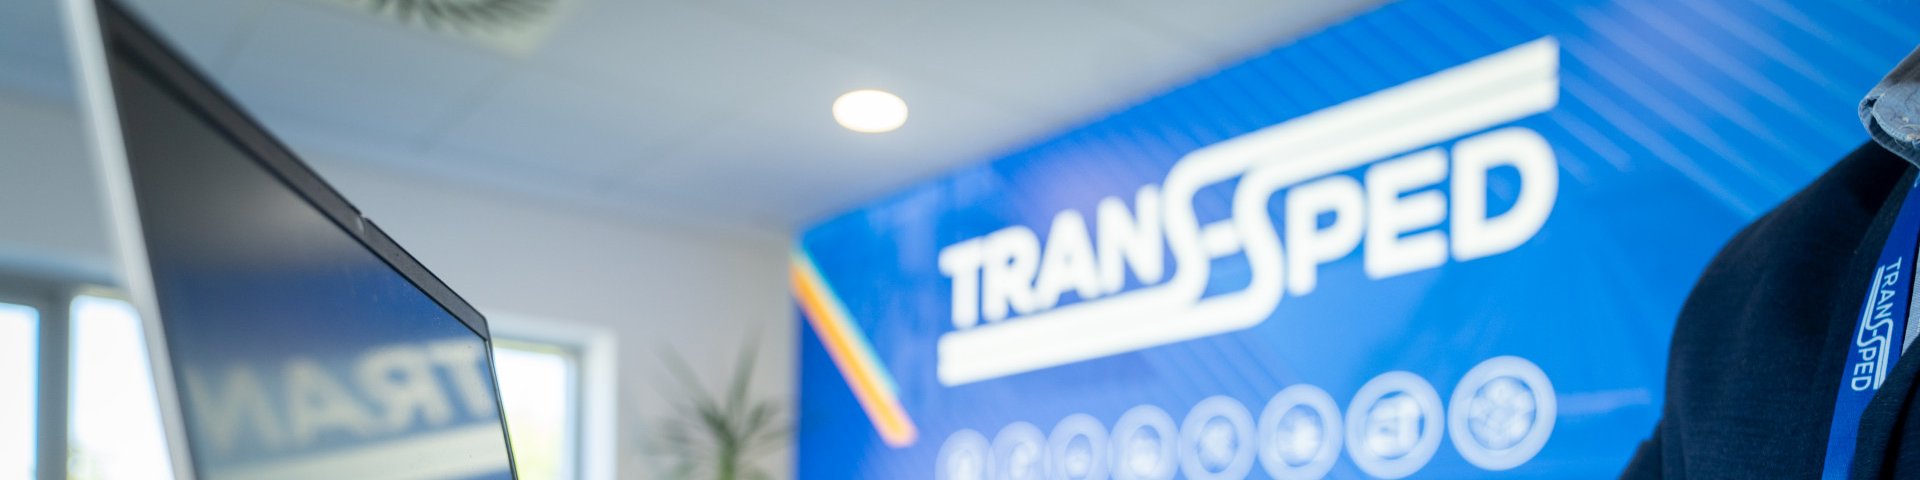 A Trans-Sped Kft. megvásárolta a TRANS-SPED-PAPIRUSZ Kft. 38 %-os üzletrészét